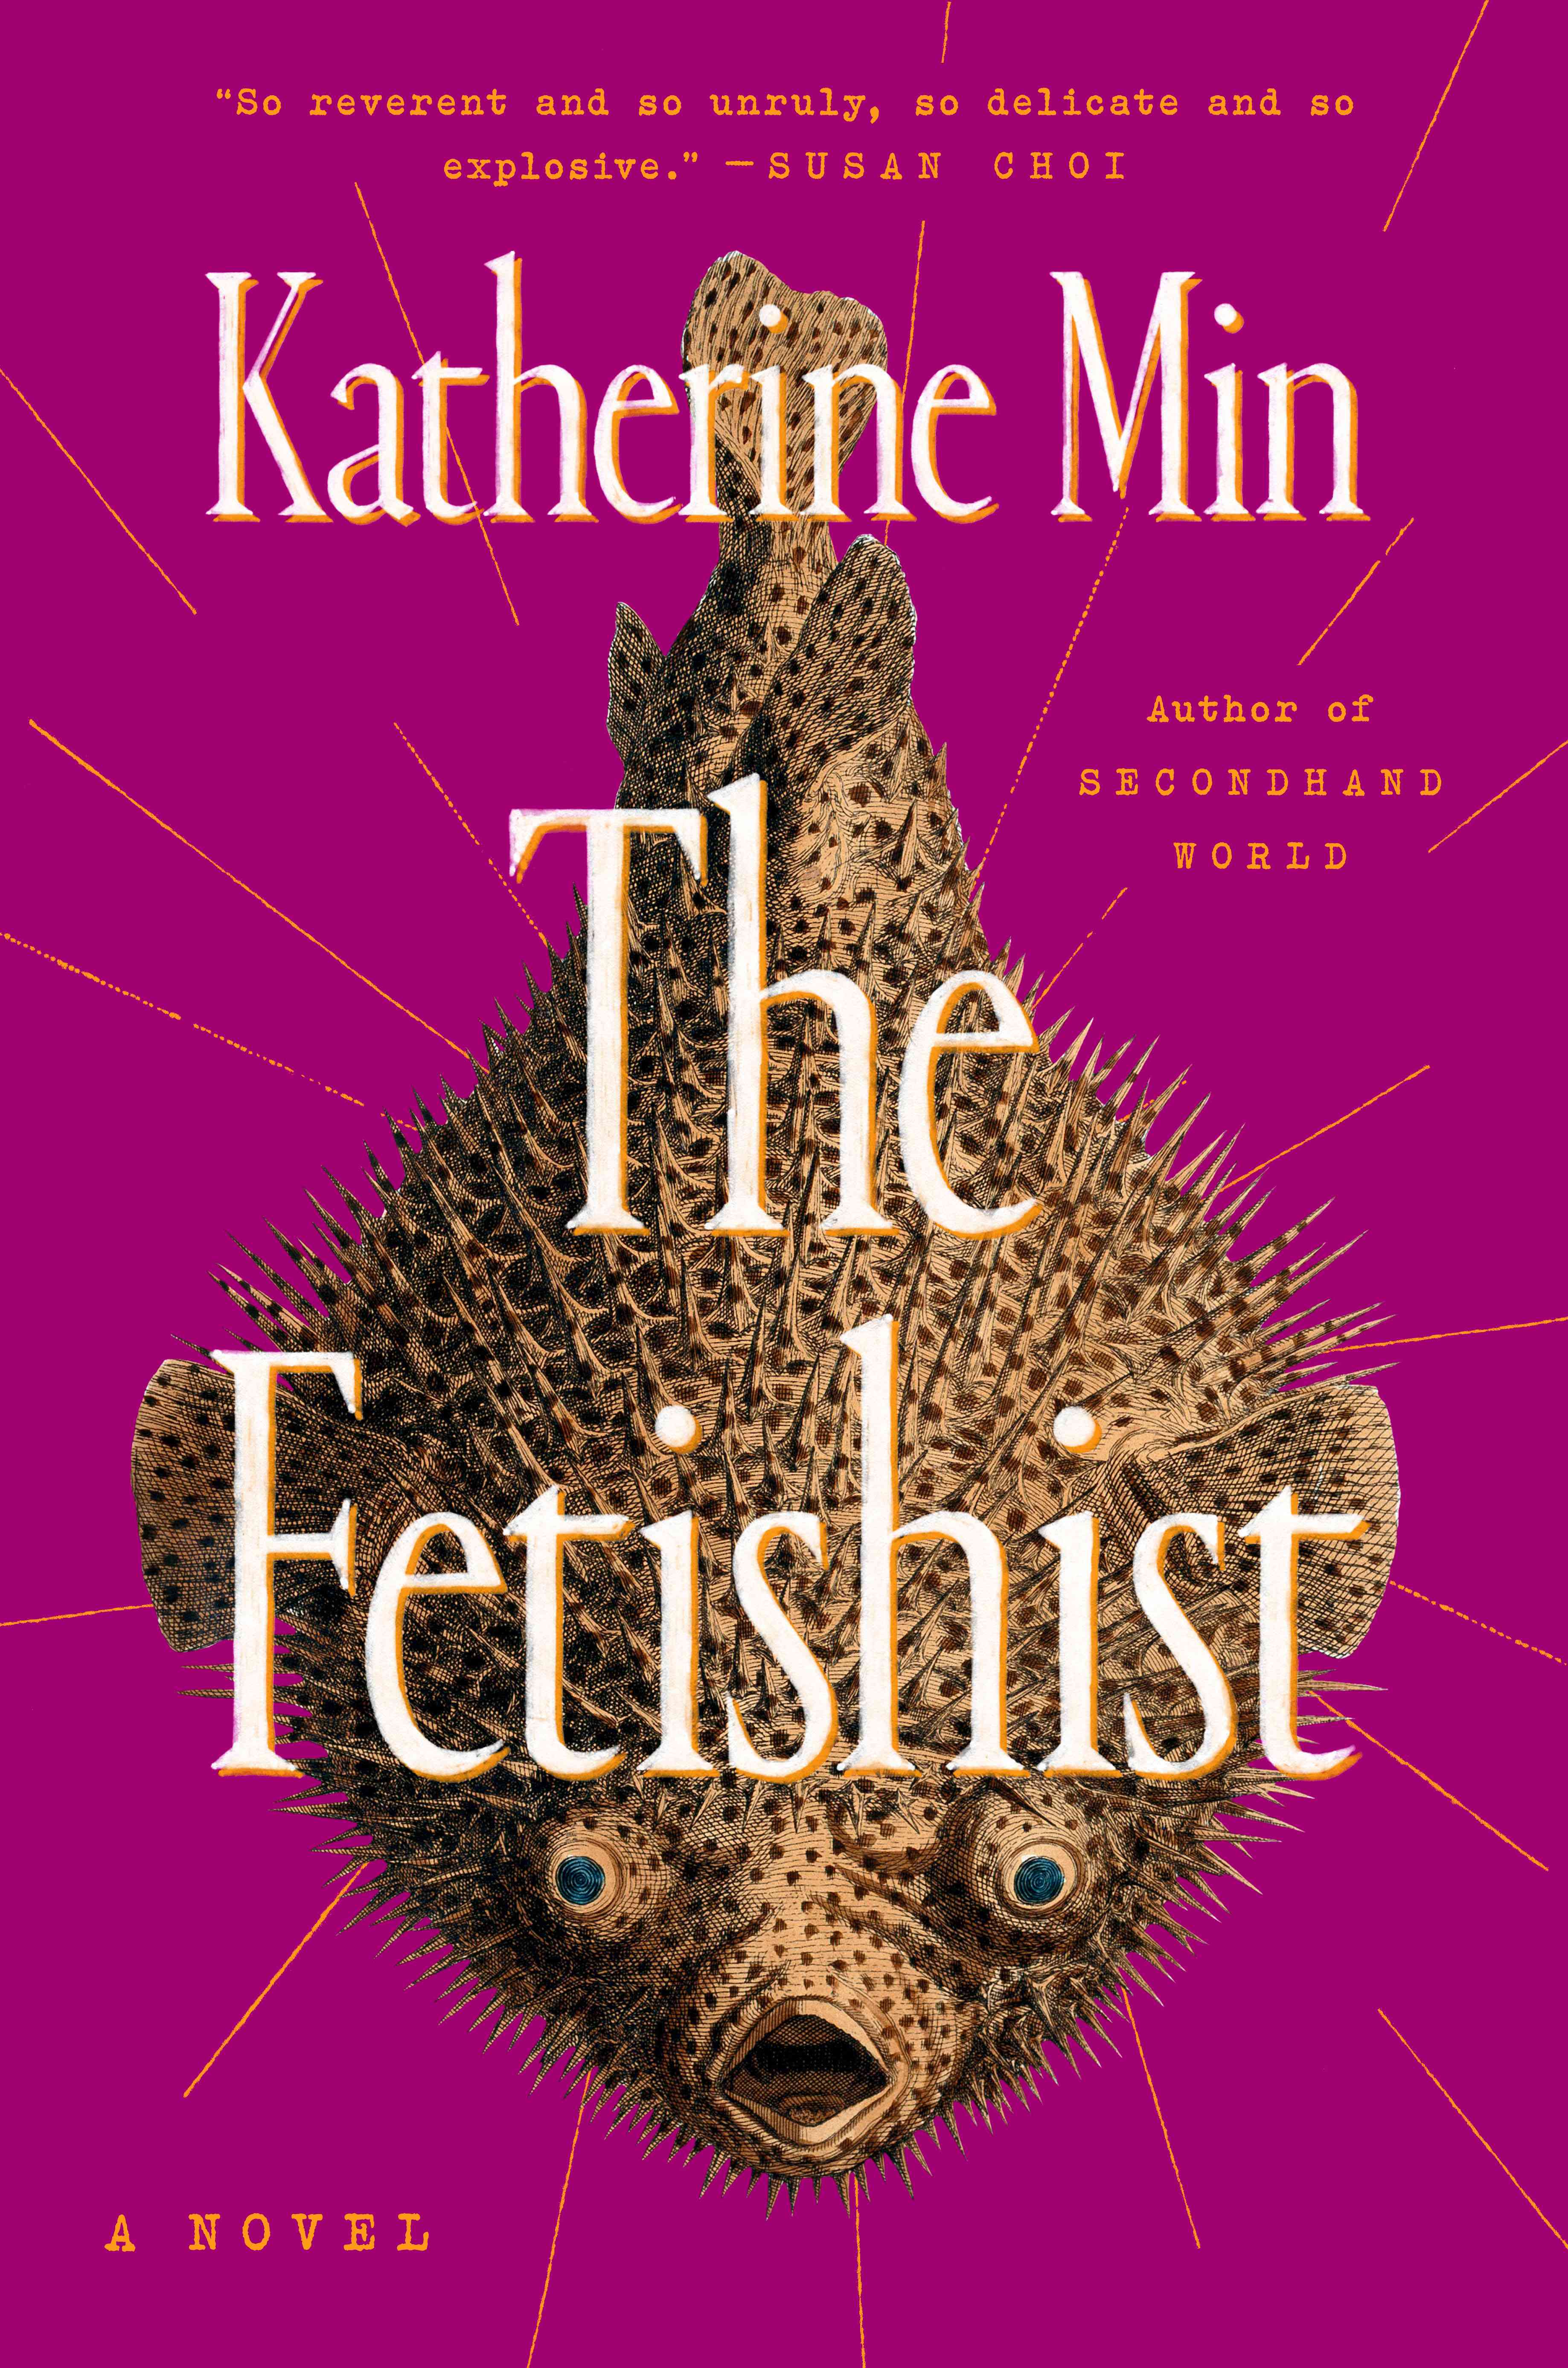 January people book picks The Fetishist katherine min